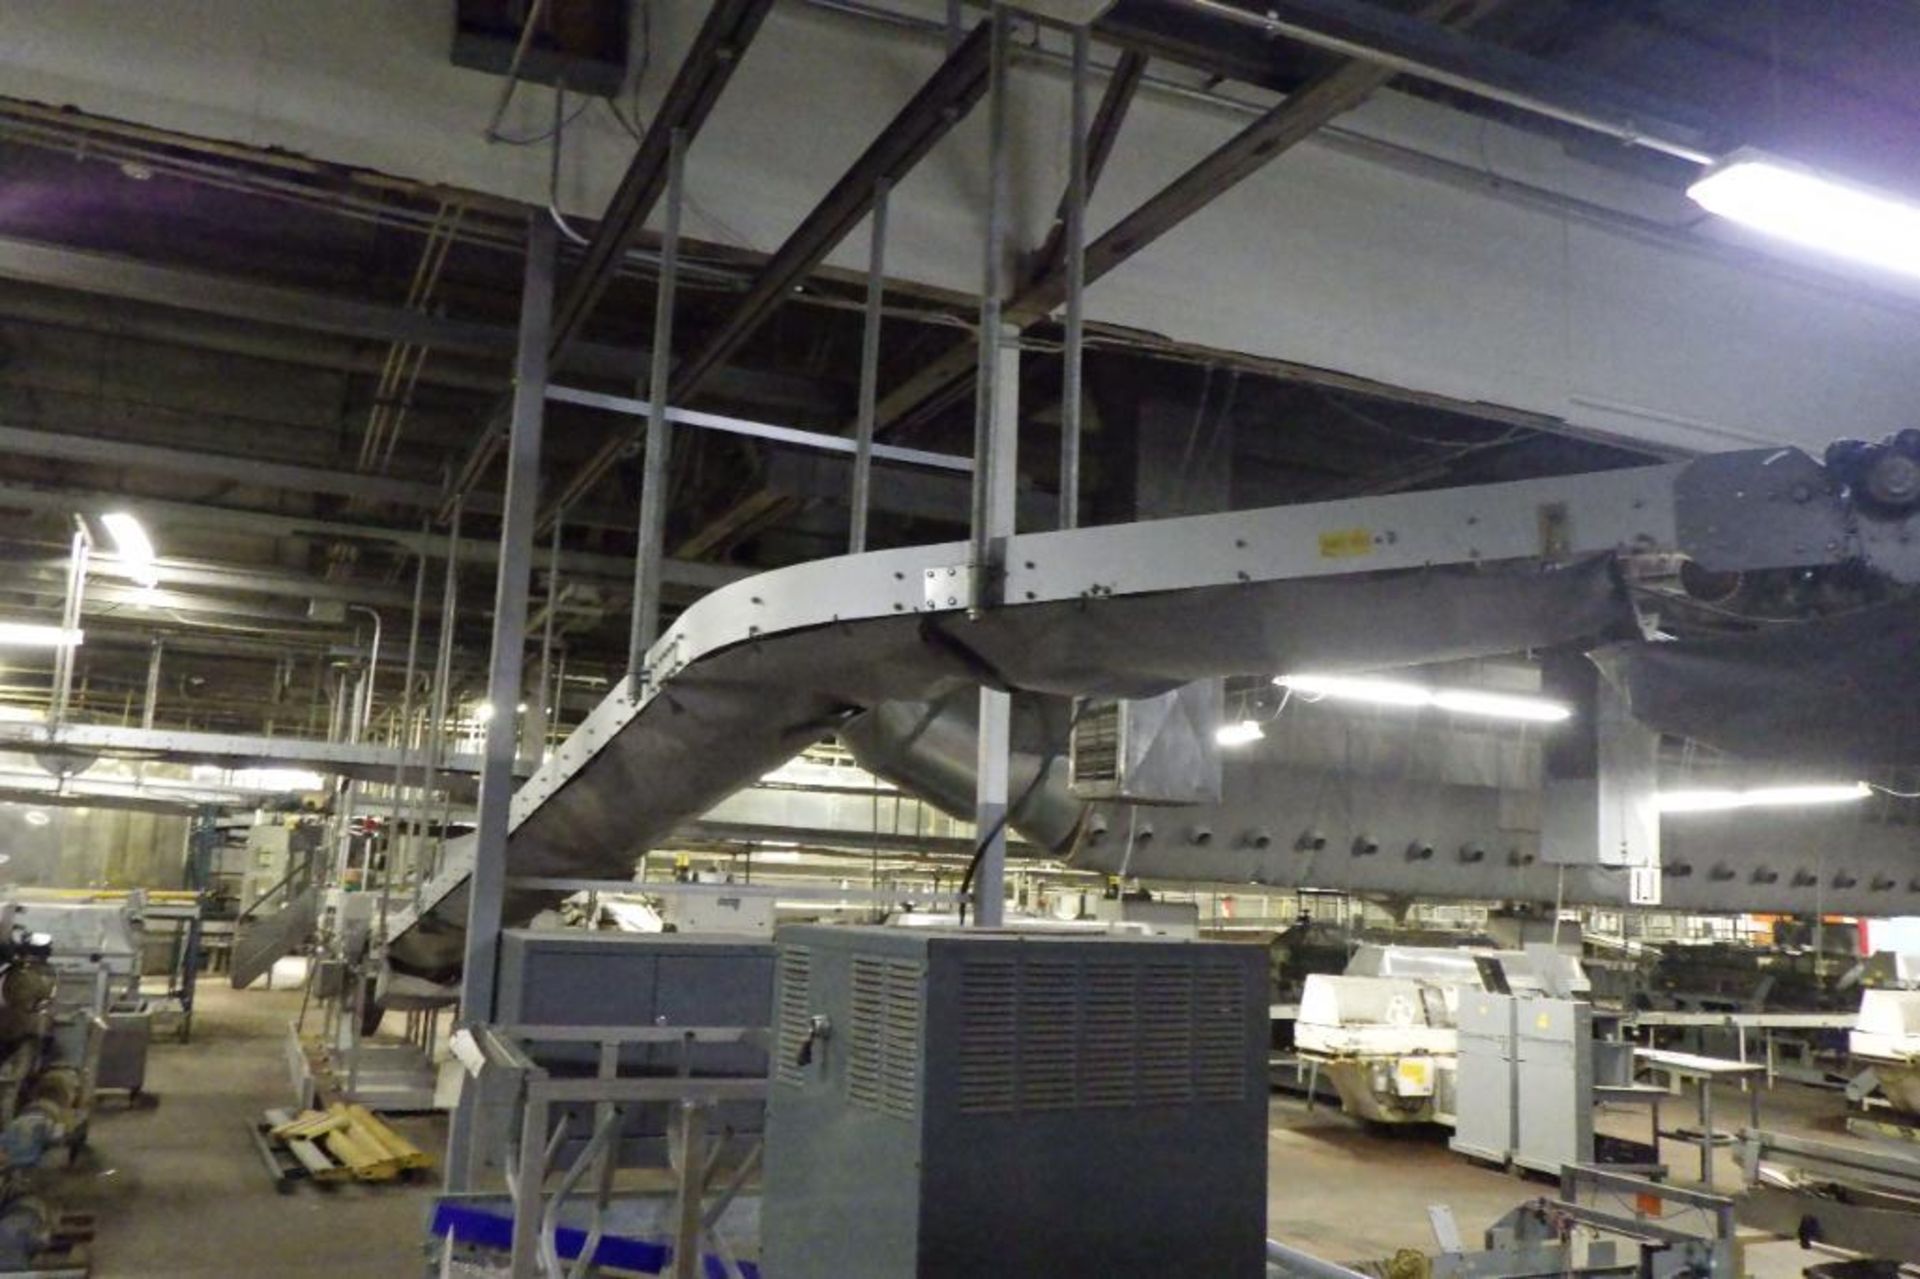 Stewart Systems overhead conveyor